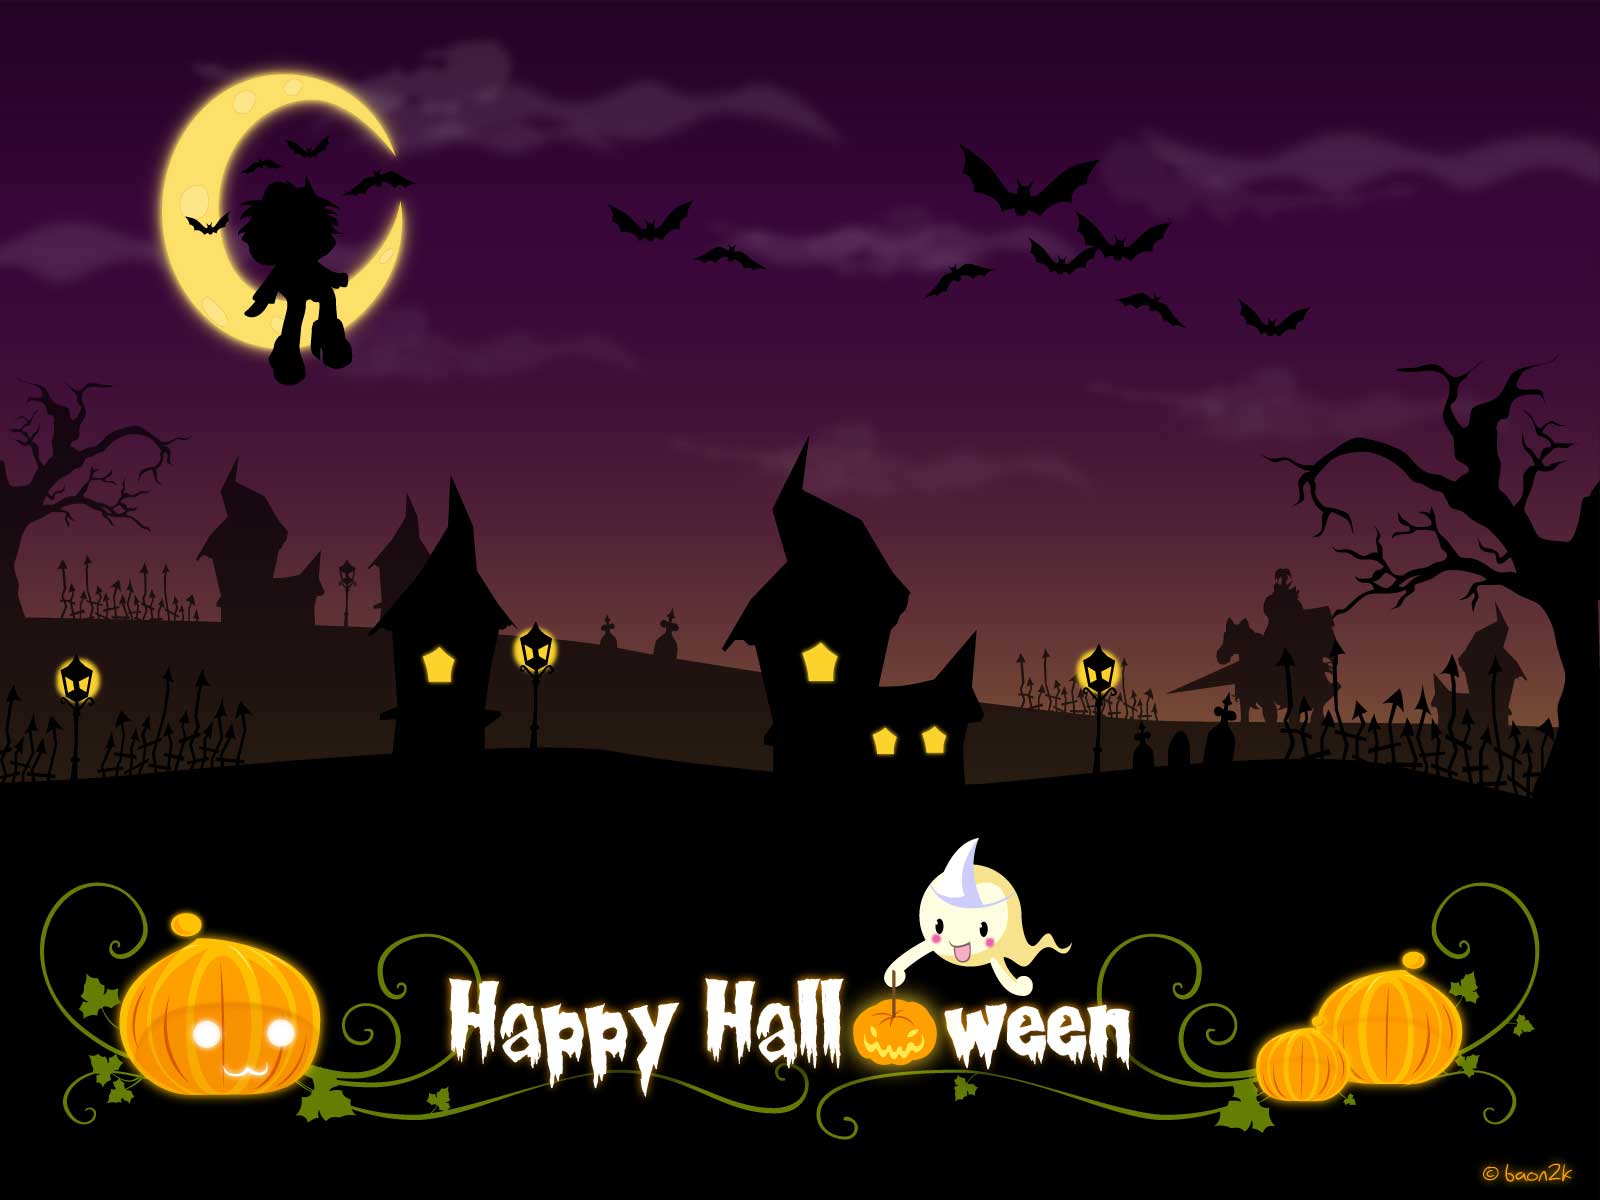 Free Halloween Desktop Wallpaper. Best Design Options